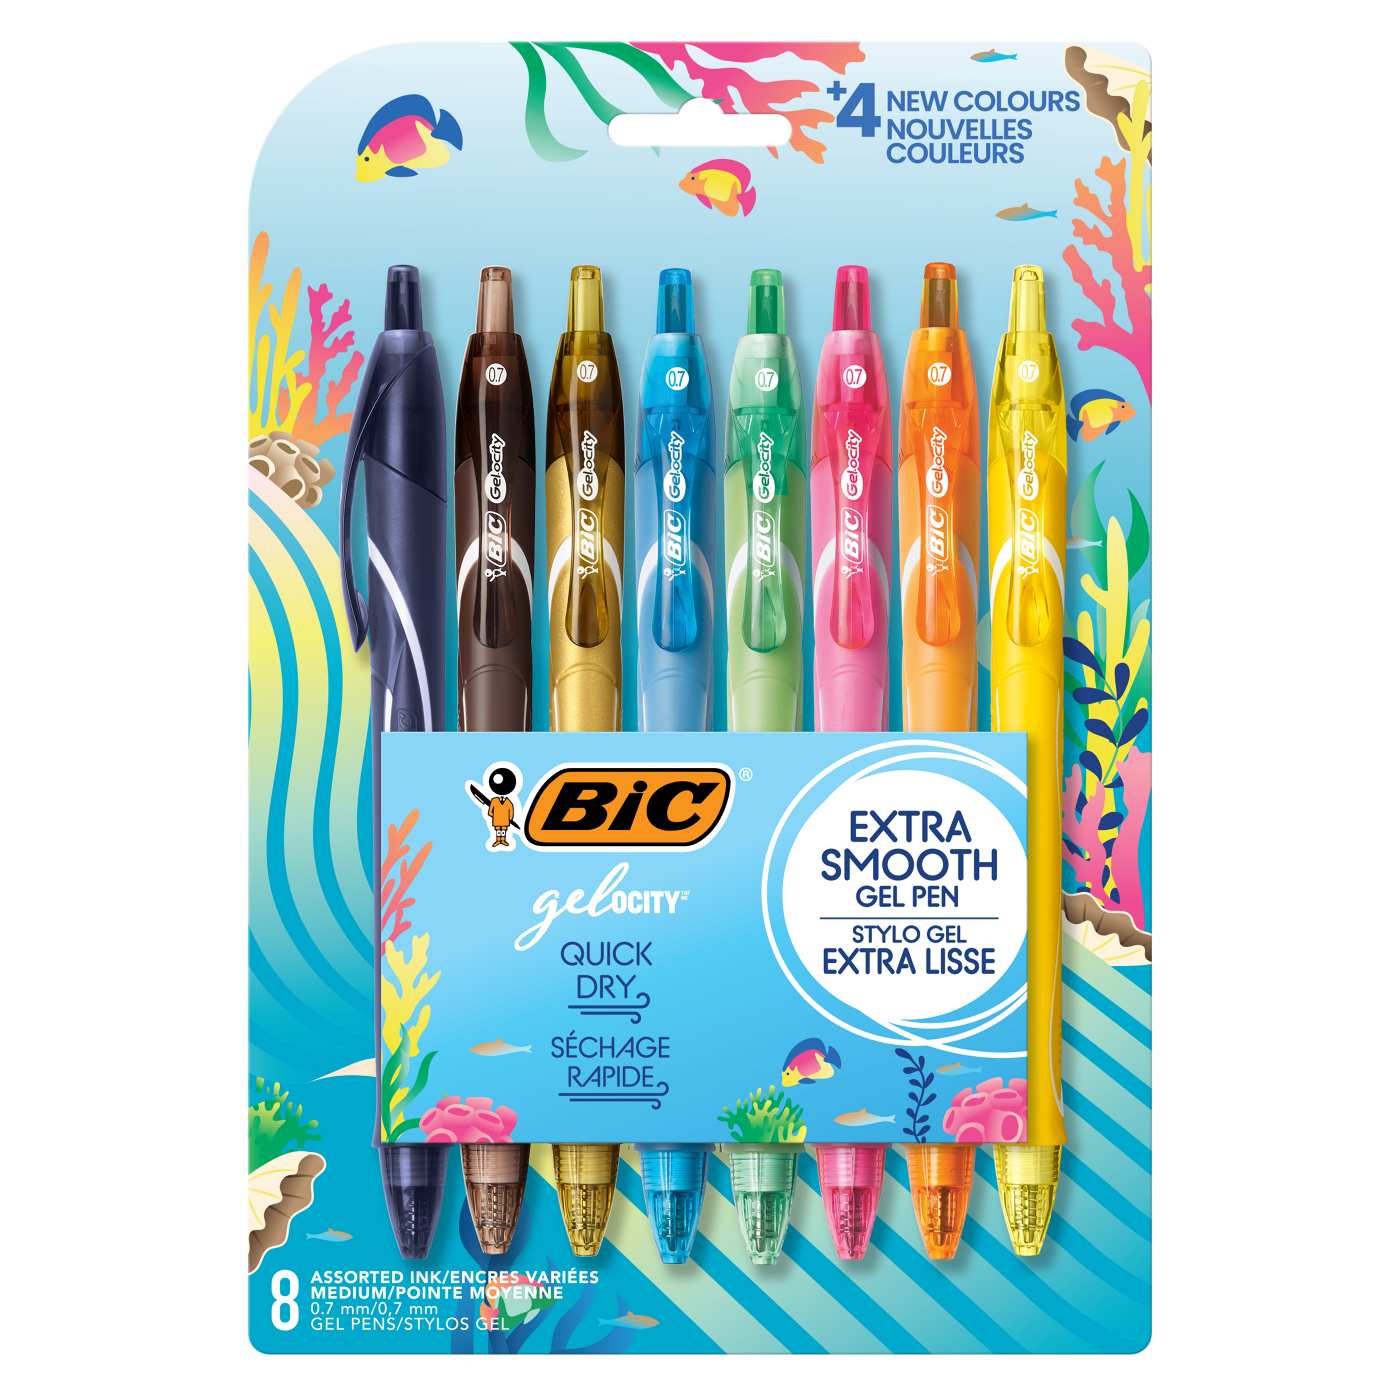 BIC Gel-ocity Quick Dry 0.7mm Retractable Gel Pens - Assorted Ocean Theme Ink; image 1 of 2